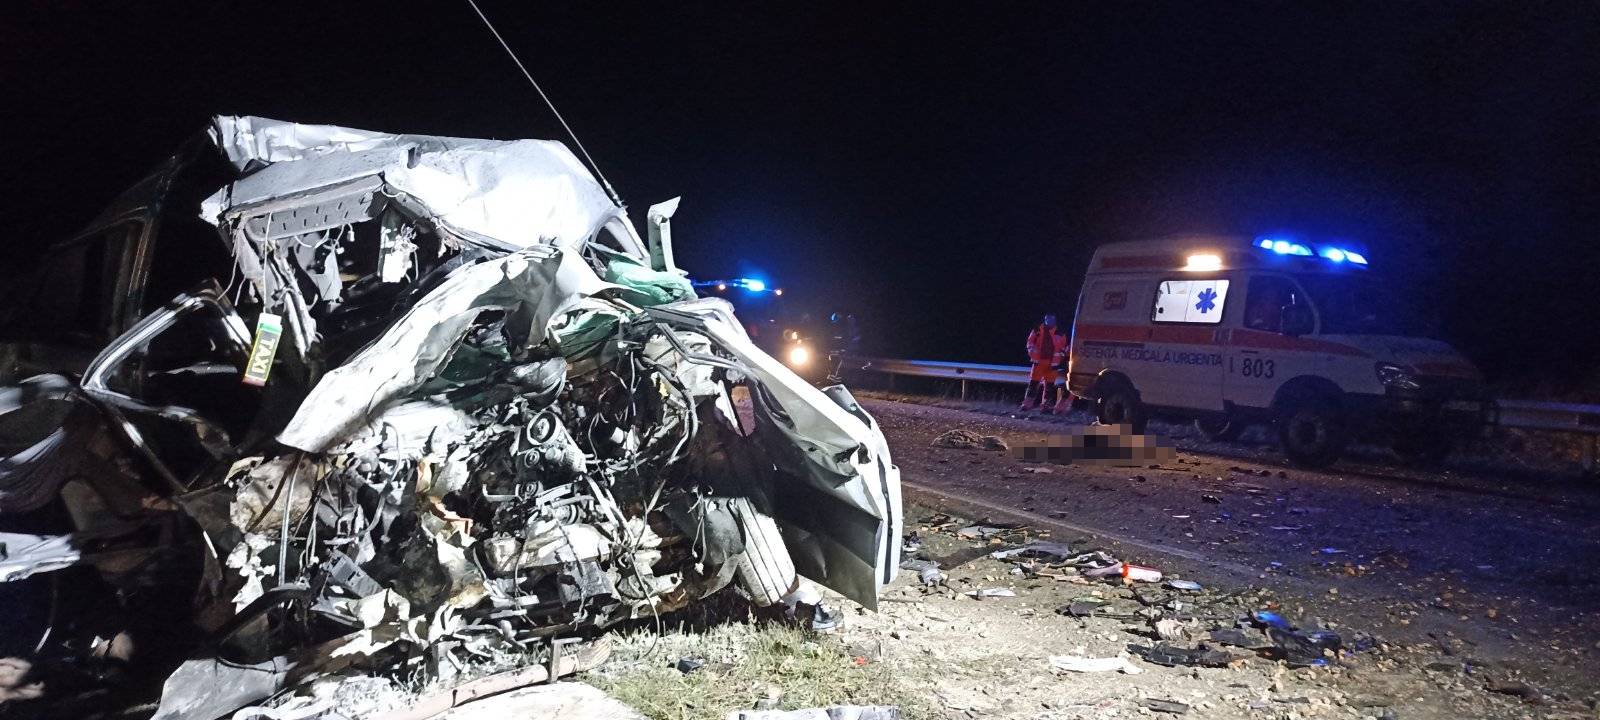 (ФОТО) На трассе Кишинев-Леушены произошло ДТП. Два человека погибли